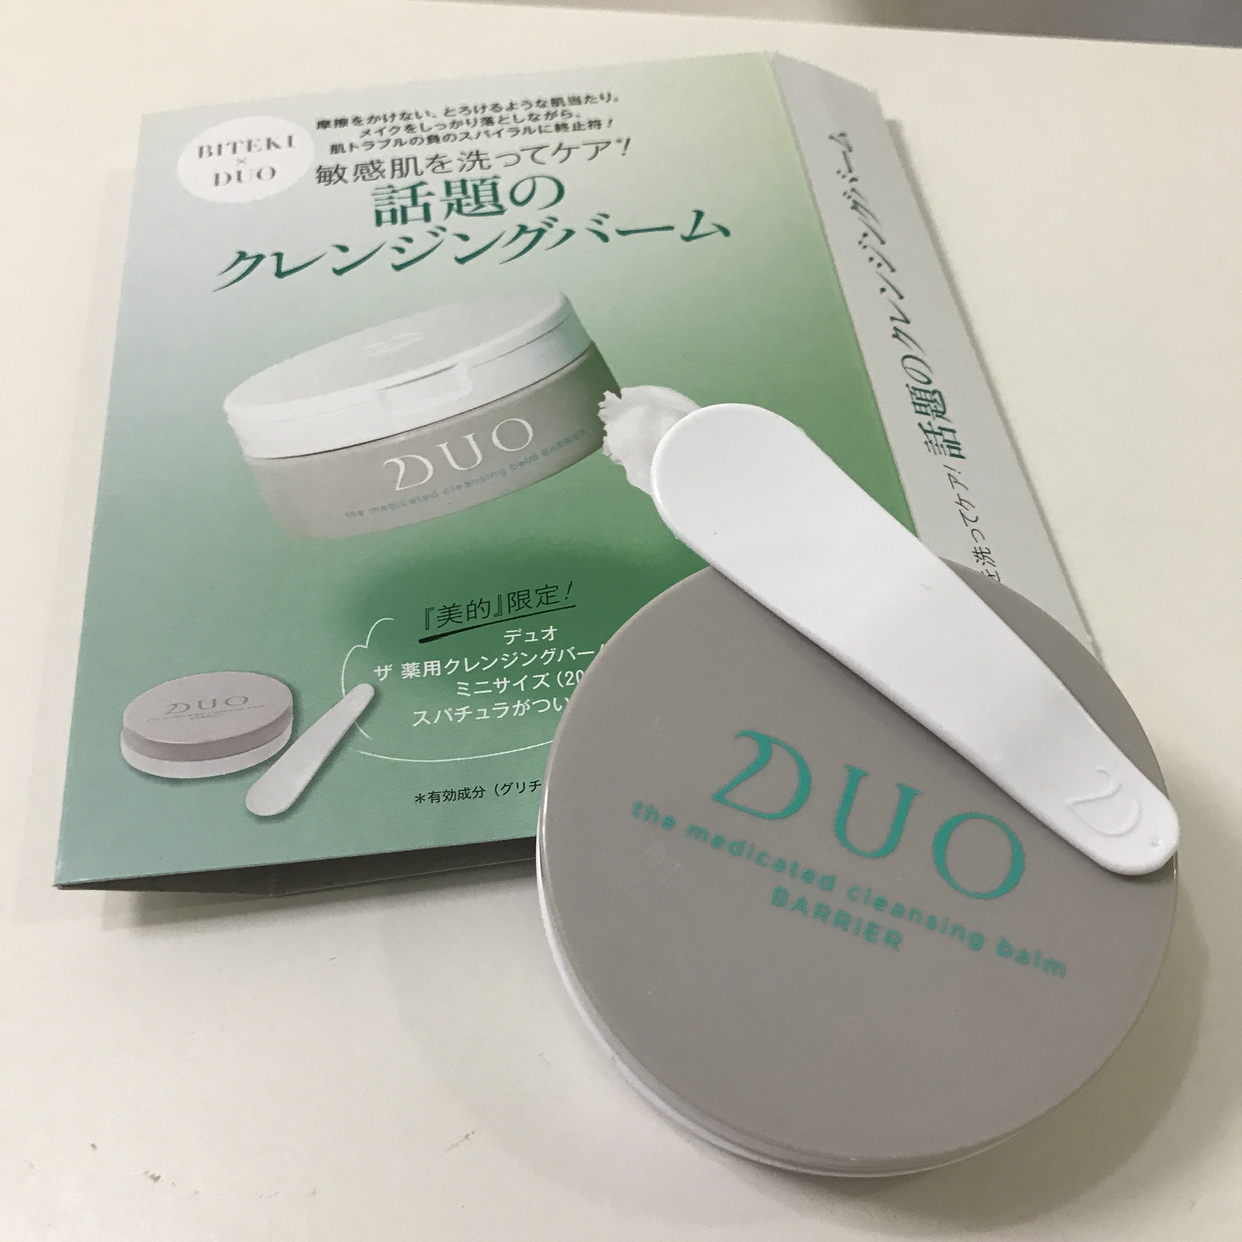 DUO(デュオ) ザ 薬用クレンジングバーム バリアを使ったEtsukoさんのクチコミ画像1